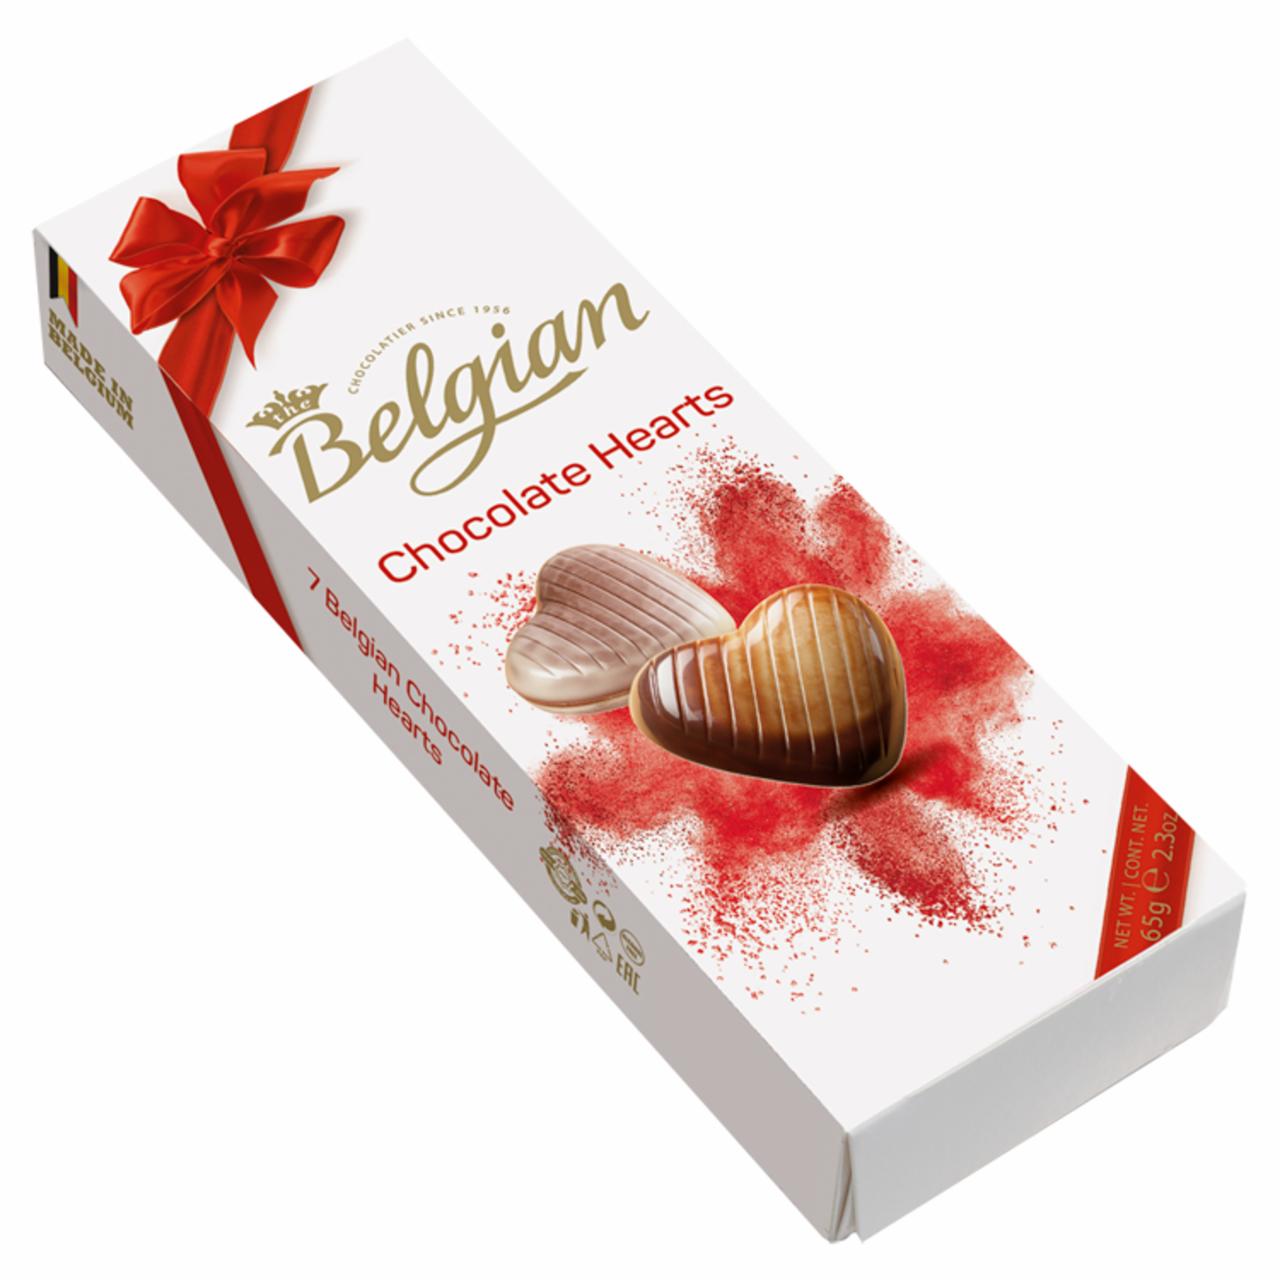 Zdjęcia - The Belgian Hearts Belgijskie czekoladki 65 g (7 sztuk)